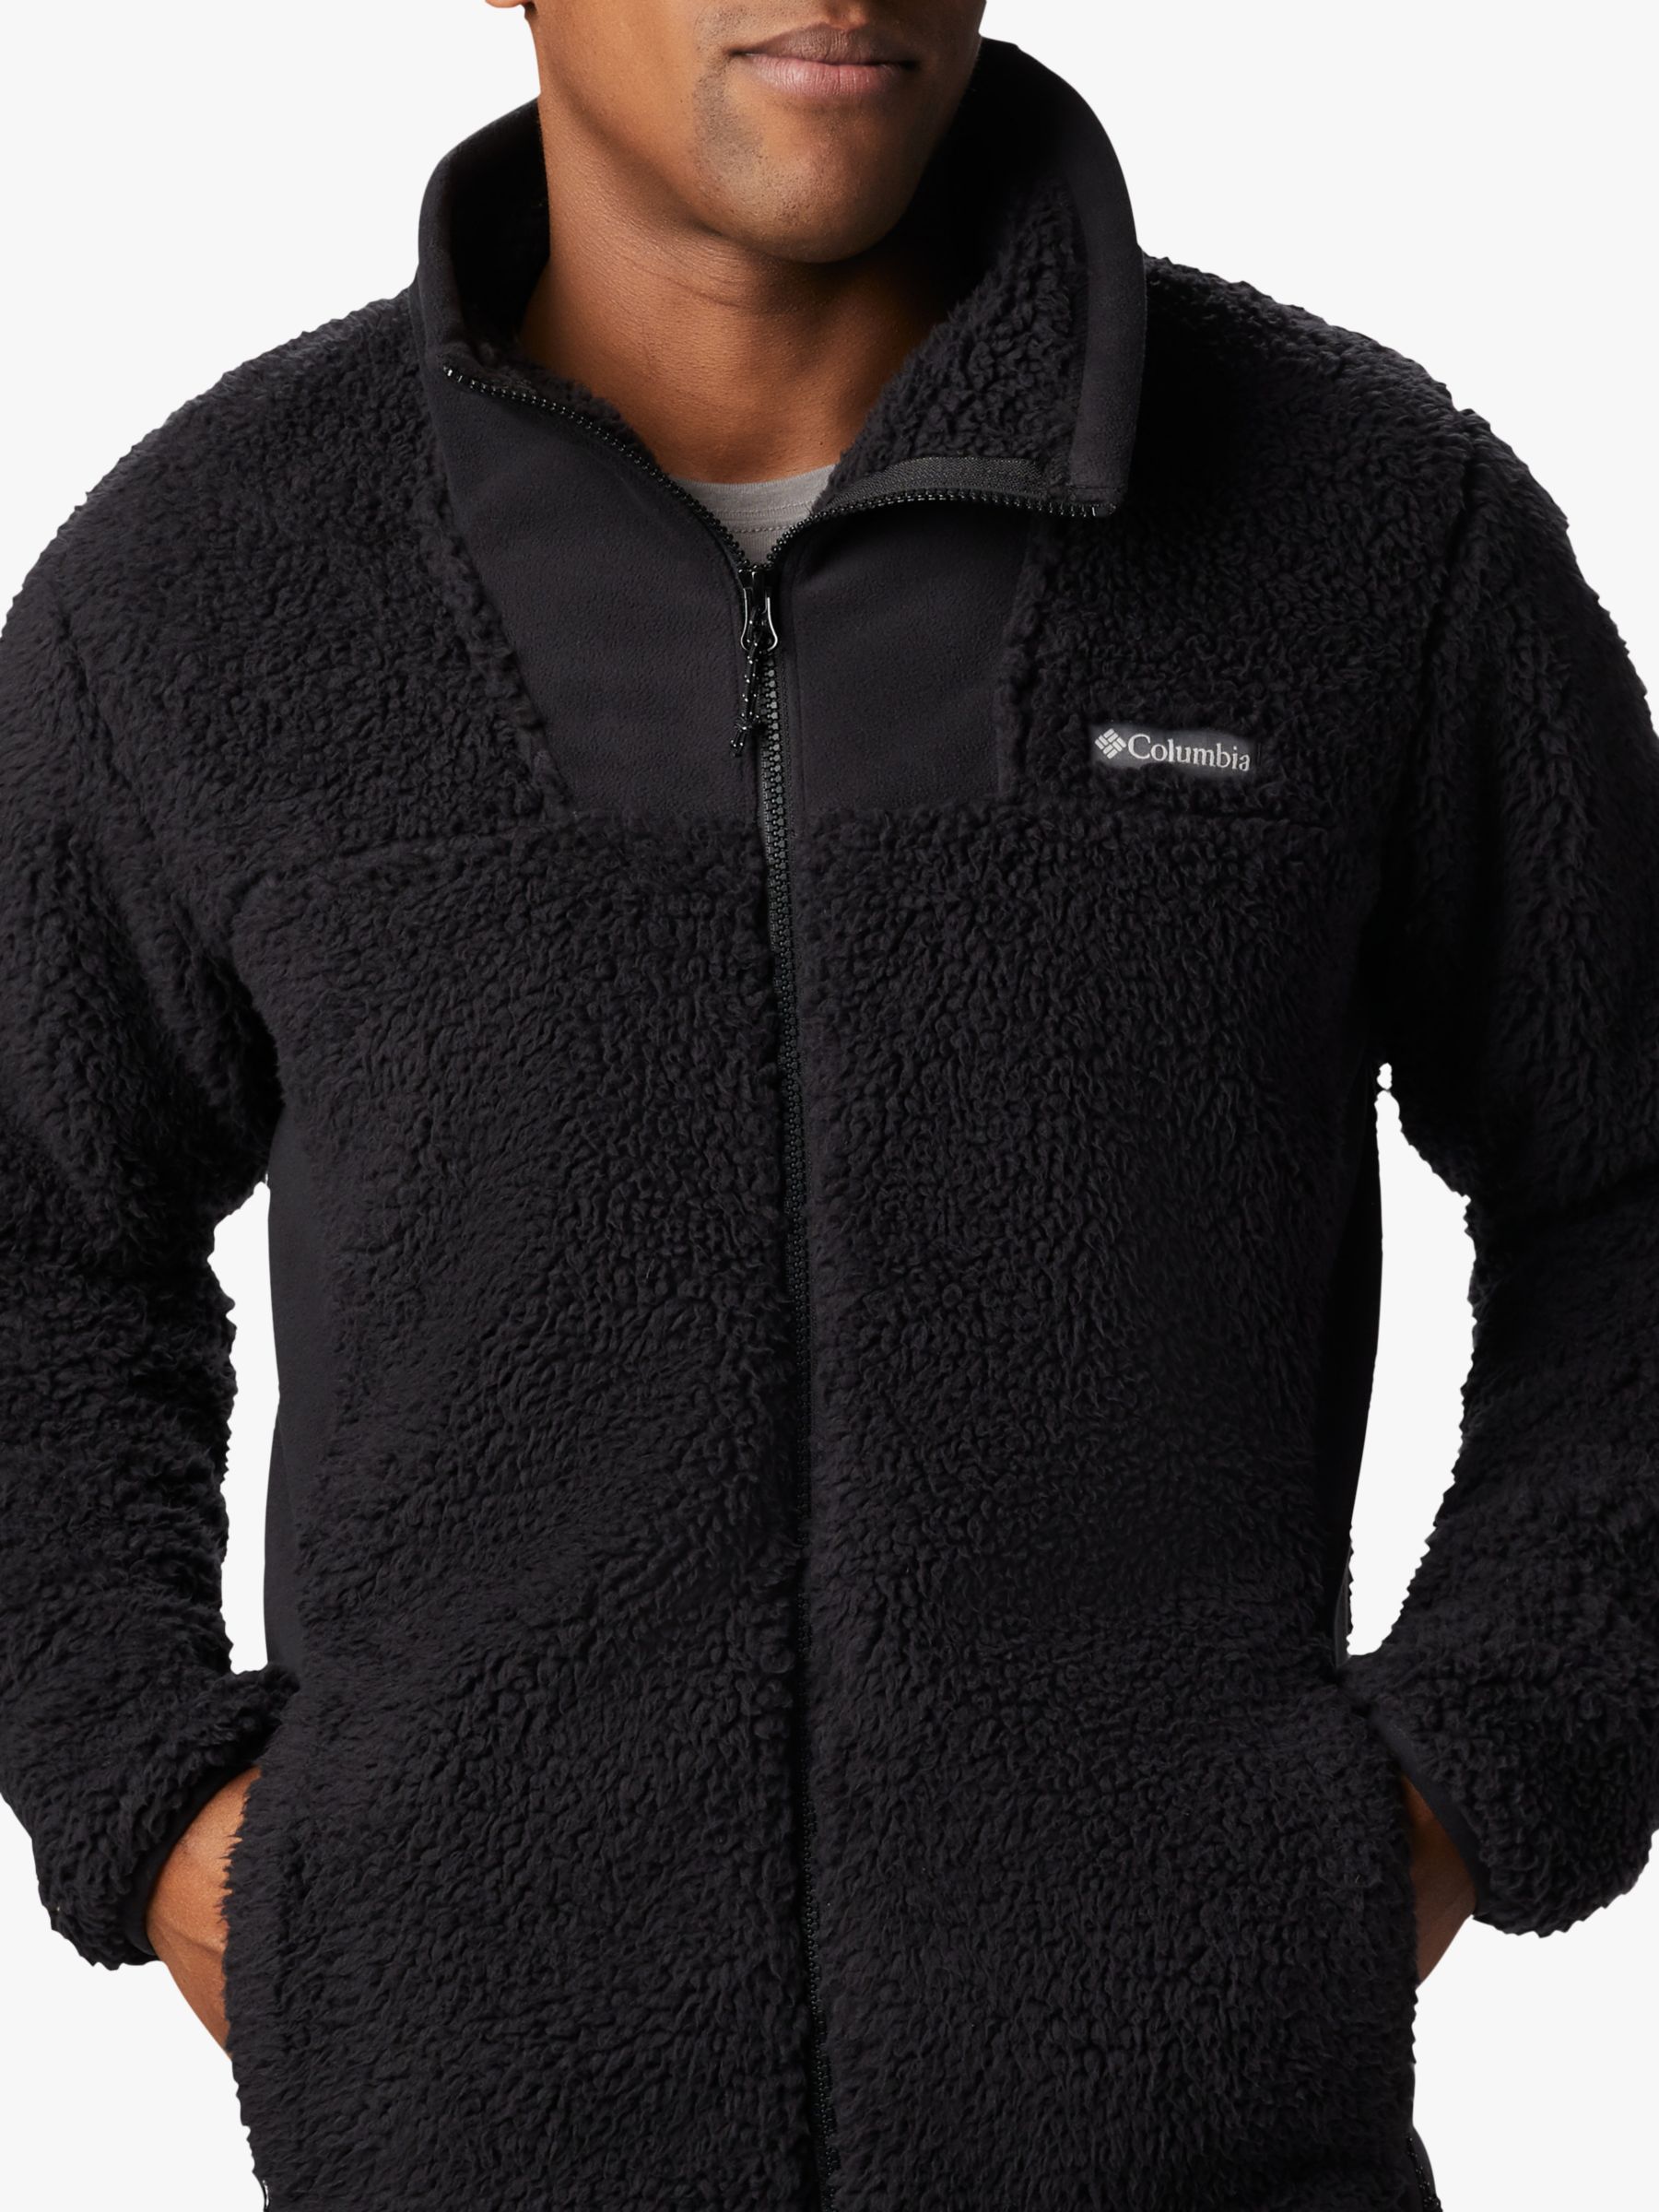 mens columbia fleece jacket with hood